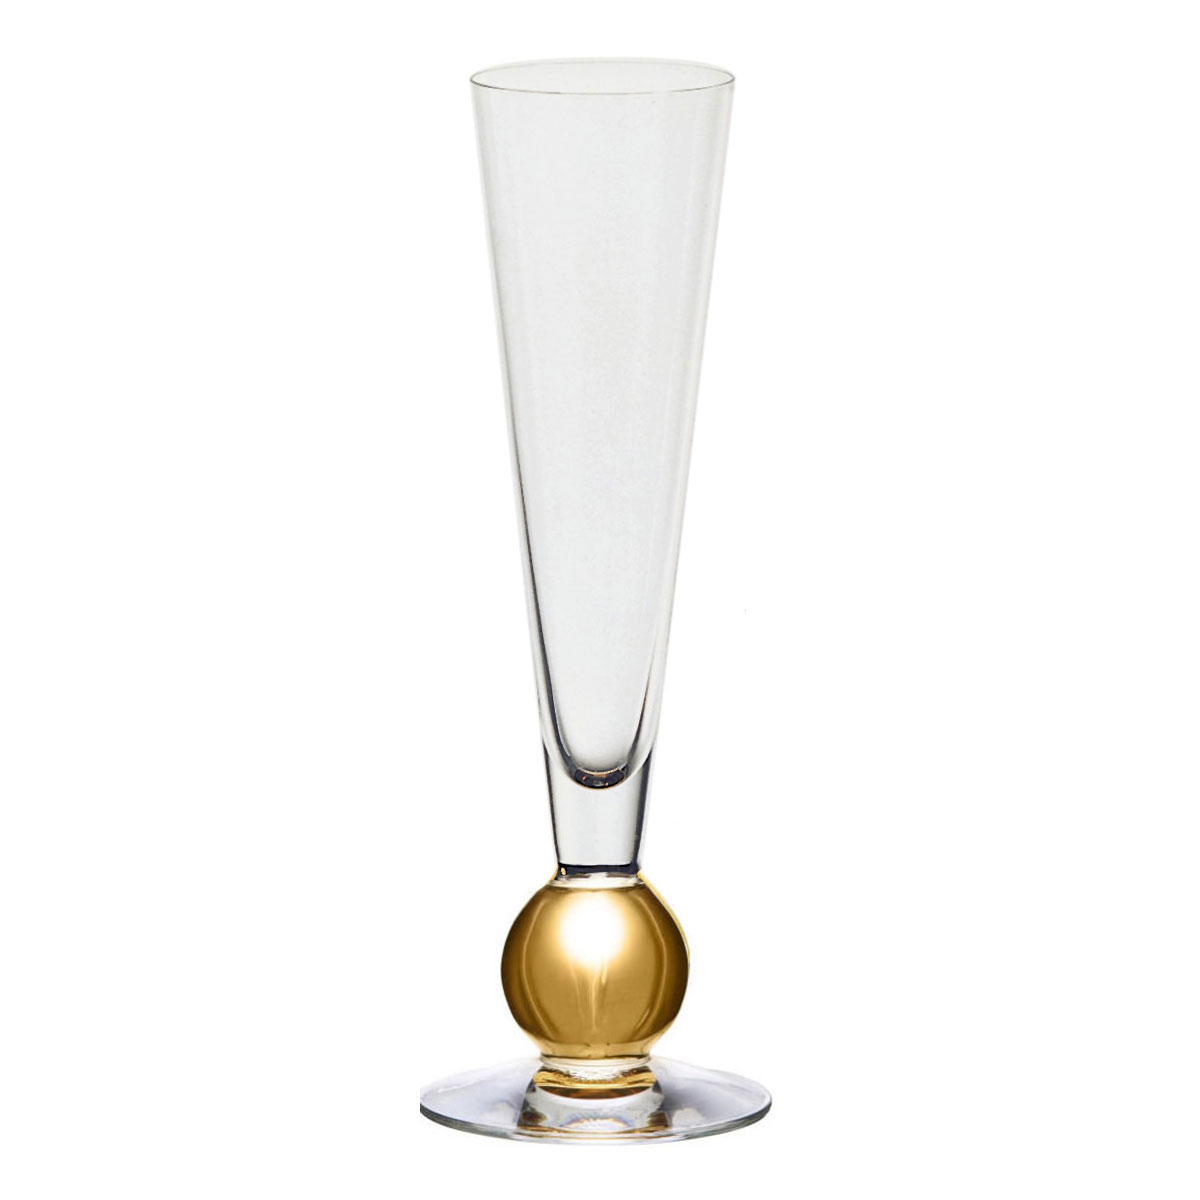 Orrefors Crystal Nobel Champagne, Single